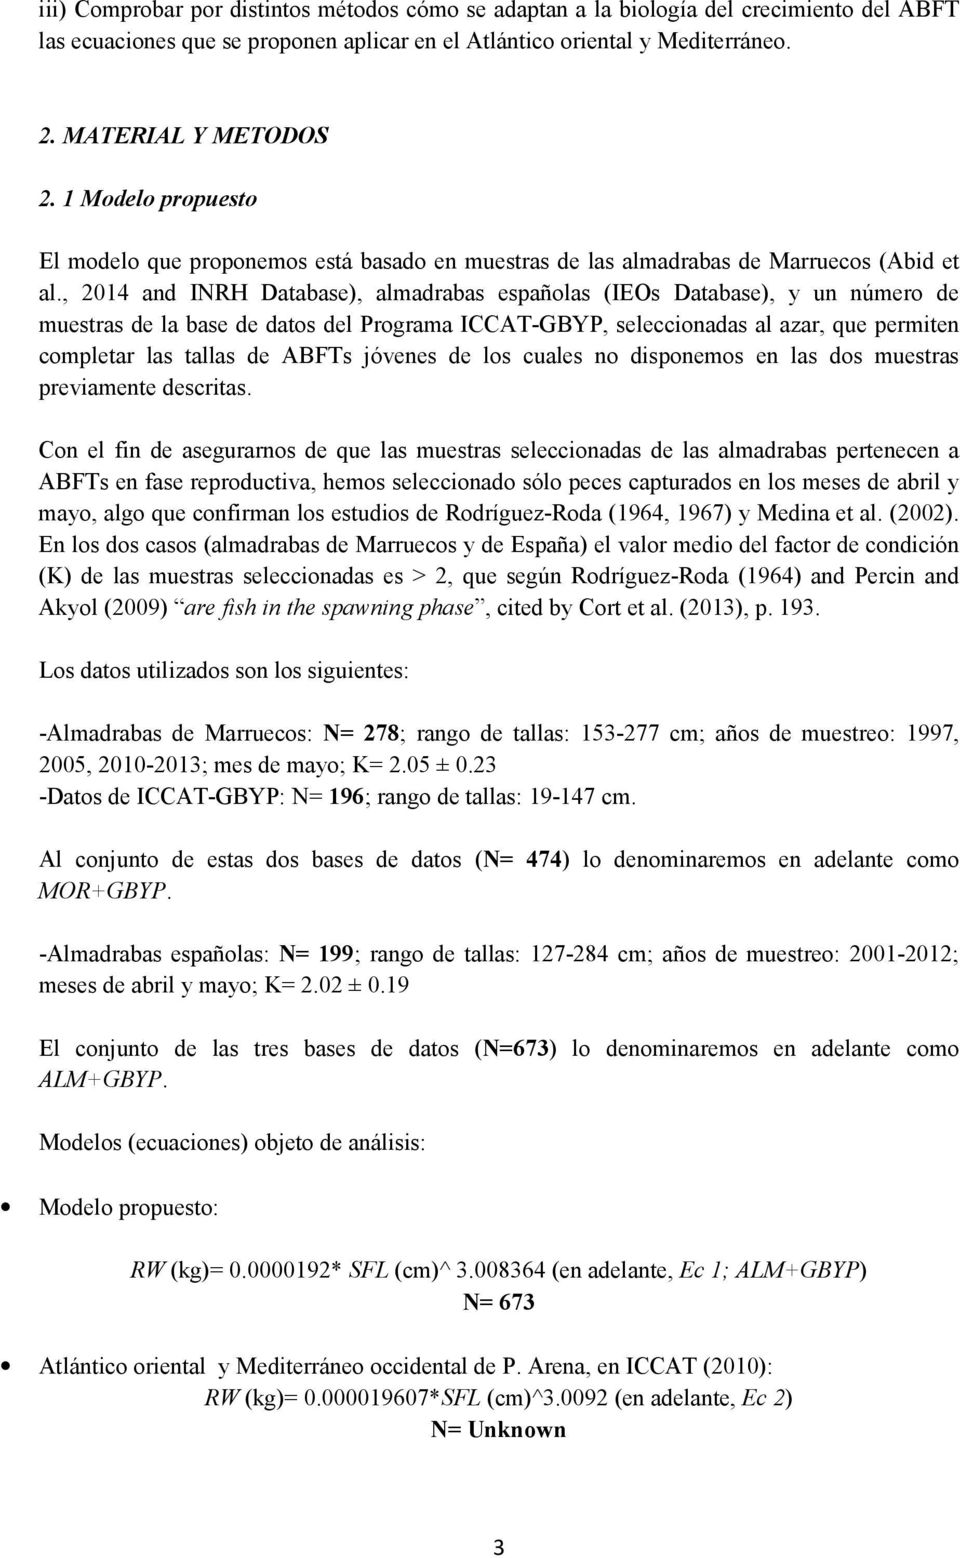 , 2014 and INRH Database), almadrabas españolas (IEOs Database), y un número de muestras de la base de datos del Programa ICCAT-GBYP, seleccionadas al azar, que permiten completar las tallas de ABFTs